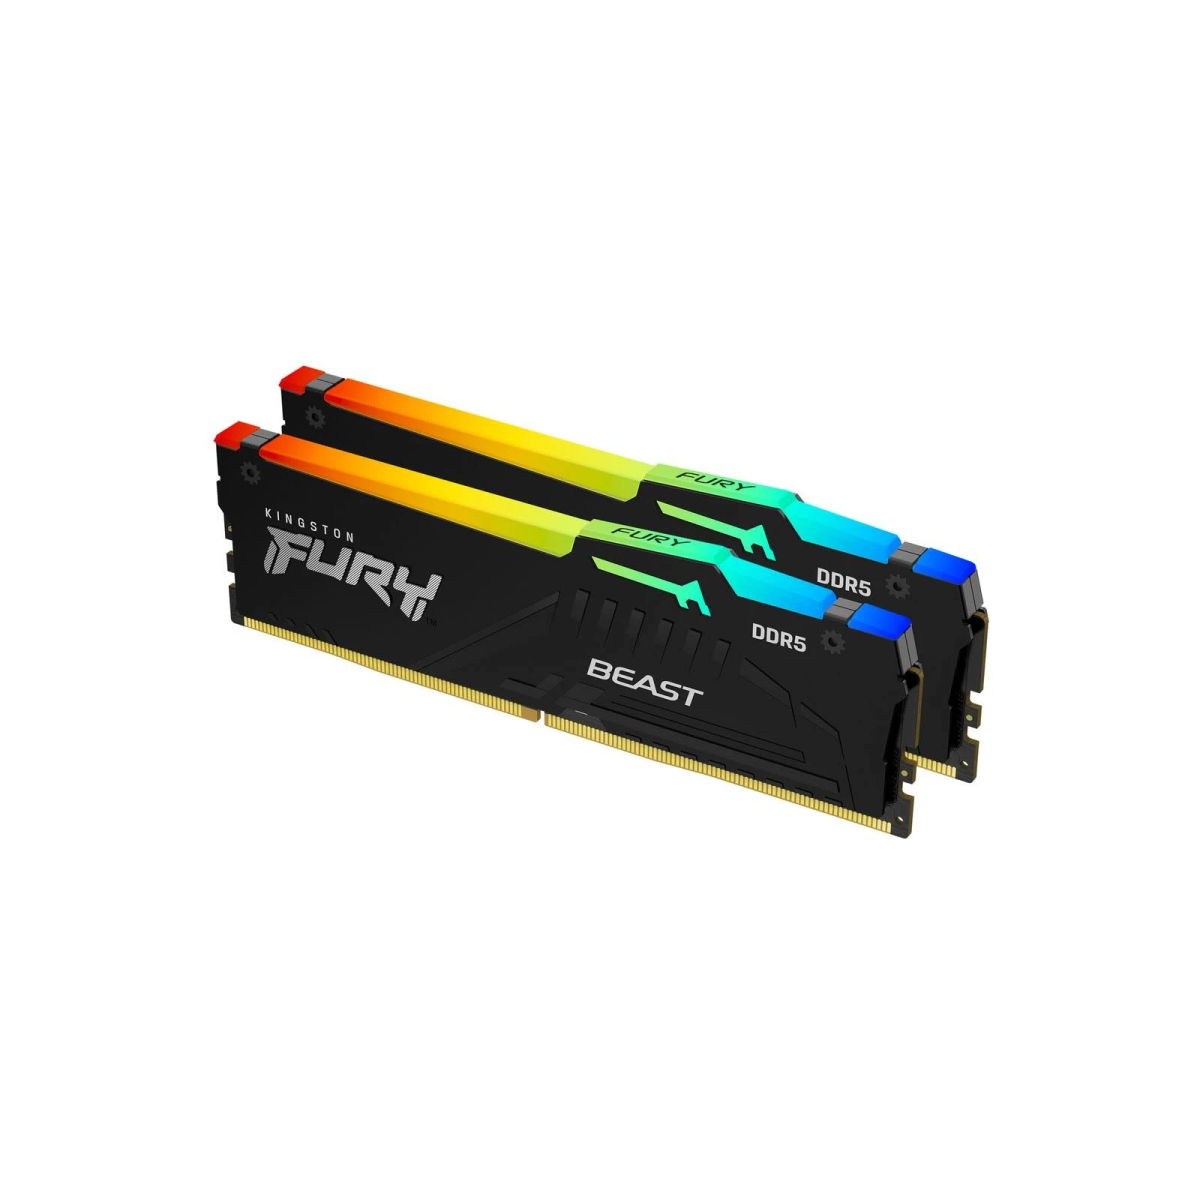 GB 32 Beast RGB Arbeitsspeicher KINGSTON DDR5